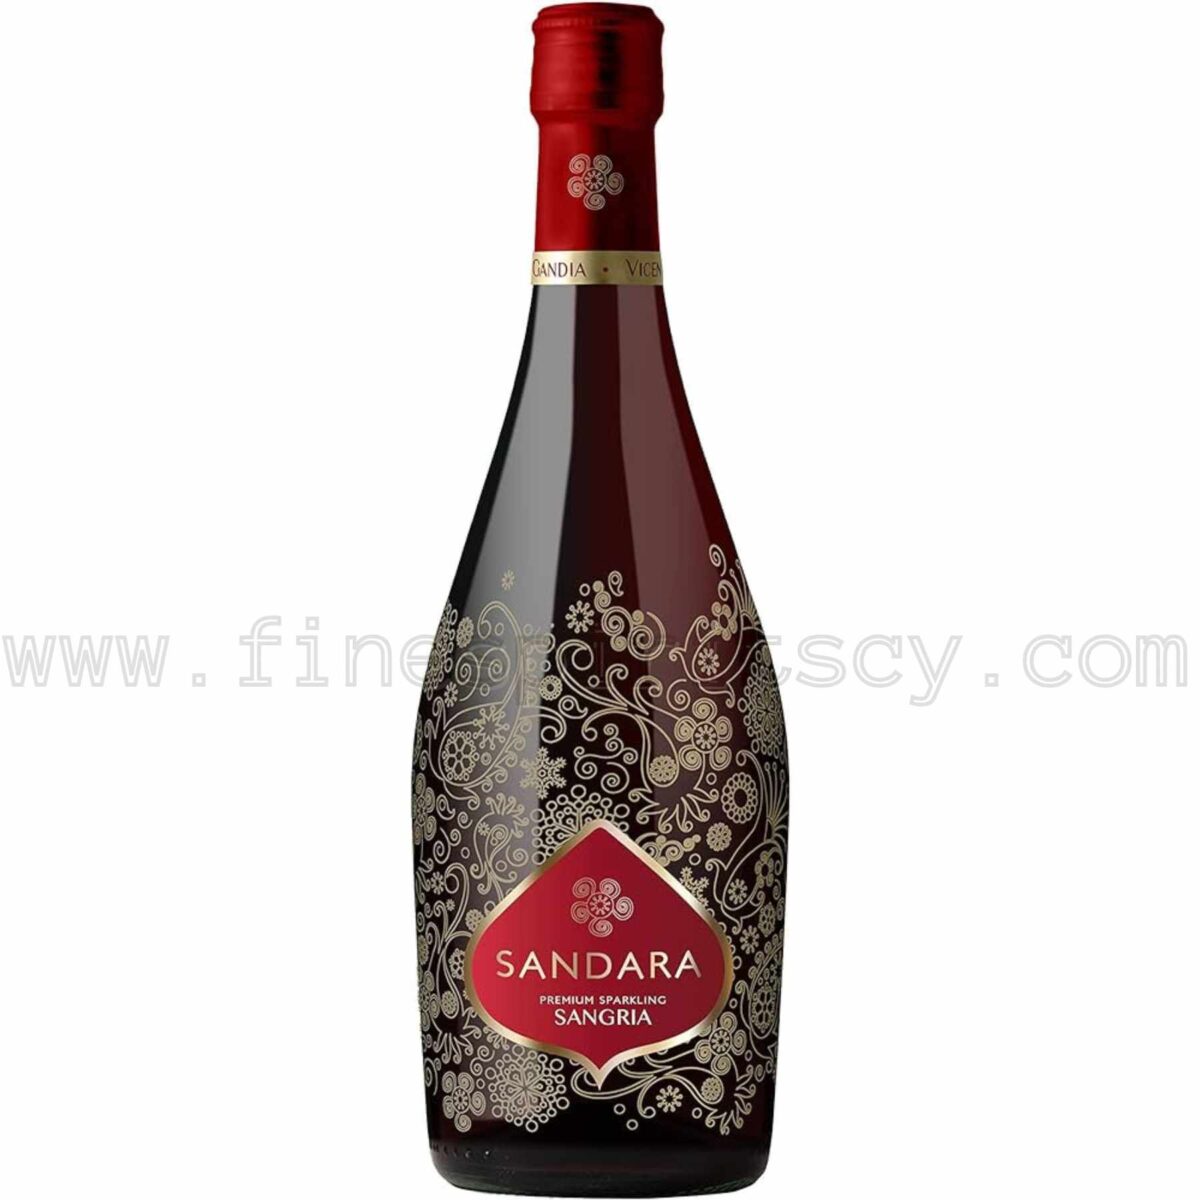 Sandara Sangria Espumoso Sparkling Wine Premium